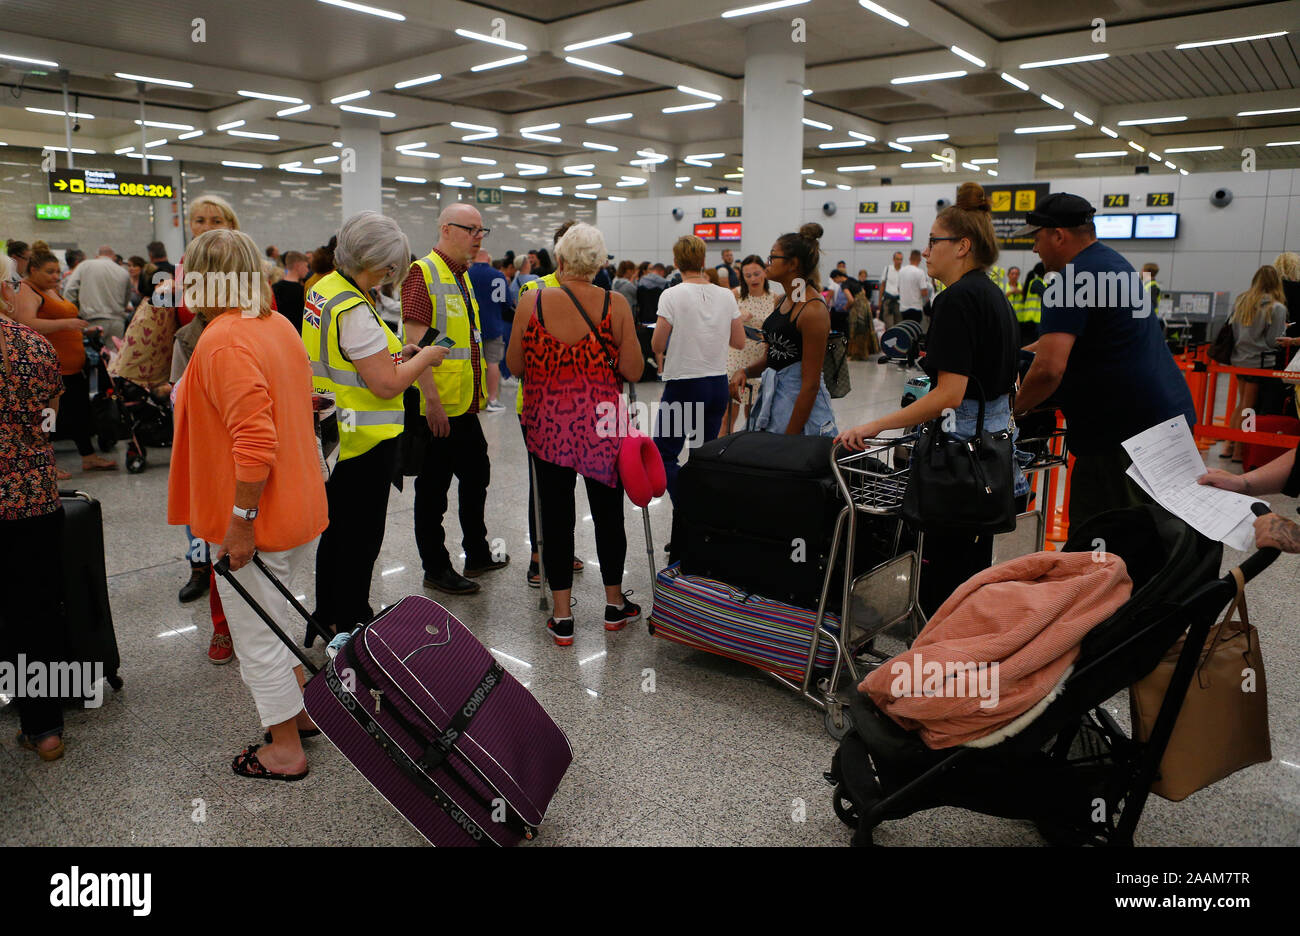 Les passagers bloqués à l'aéroport de Palma de Majorque après l'échec du principal voyagiste Thomas Cook ont causé de nombreux voyageurs à perdre leurs vols Banque D'Images